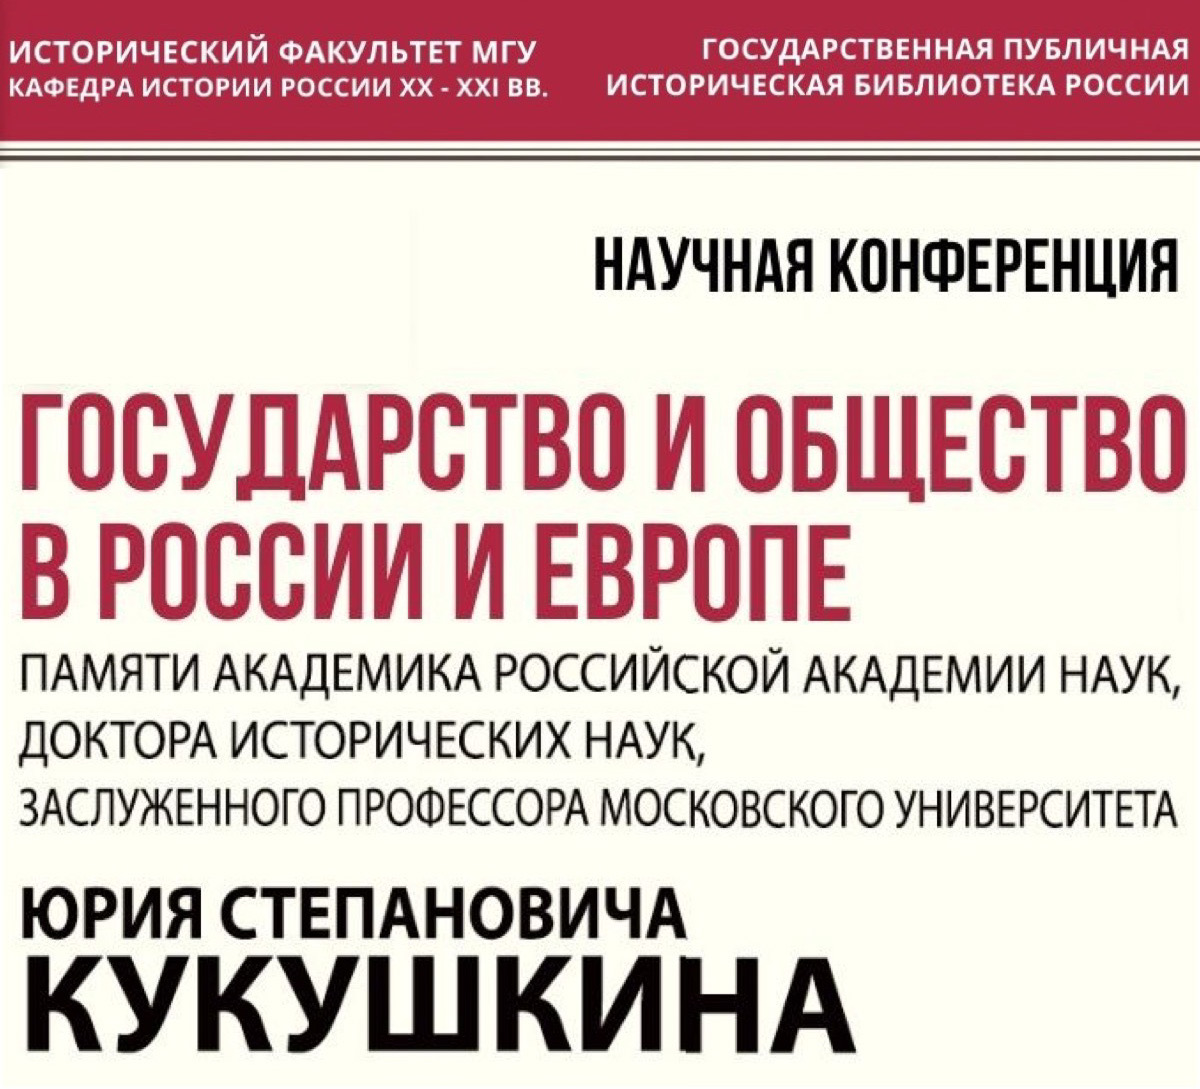 Научная конференция "Государство и общество в России и Европе" памяти Ю.С. Кукушкина